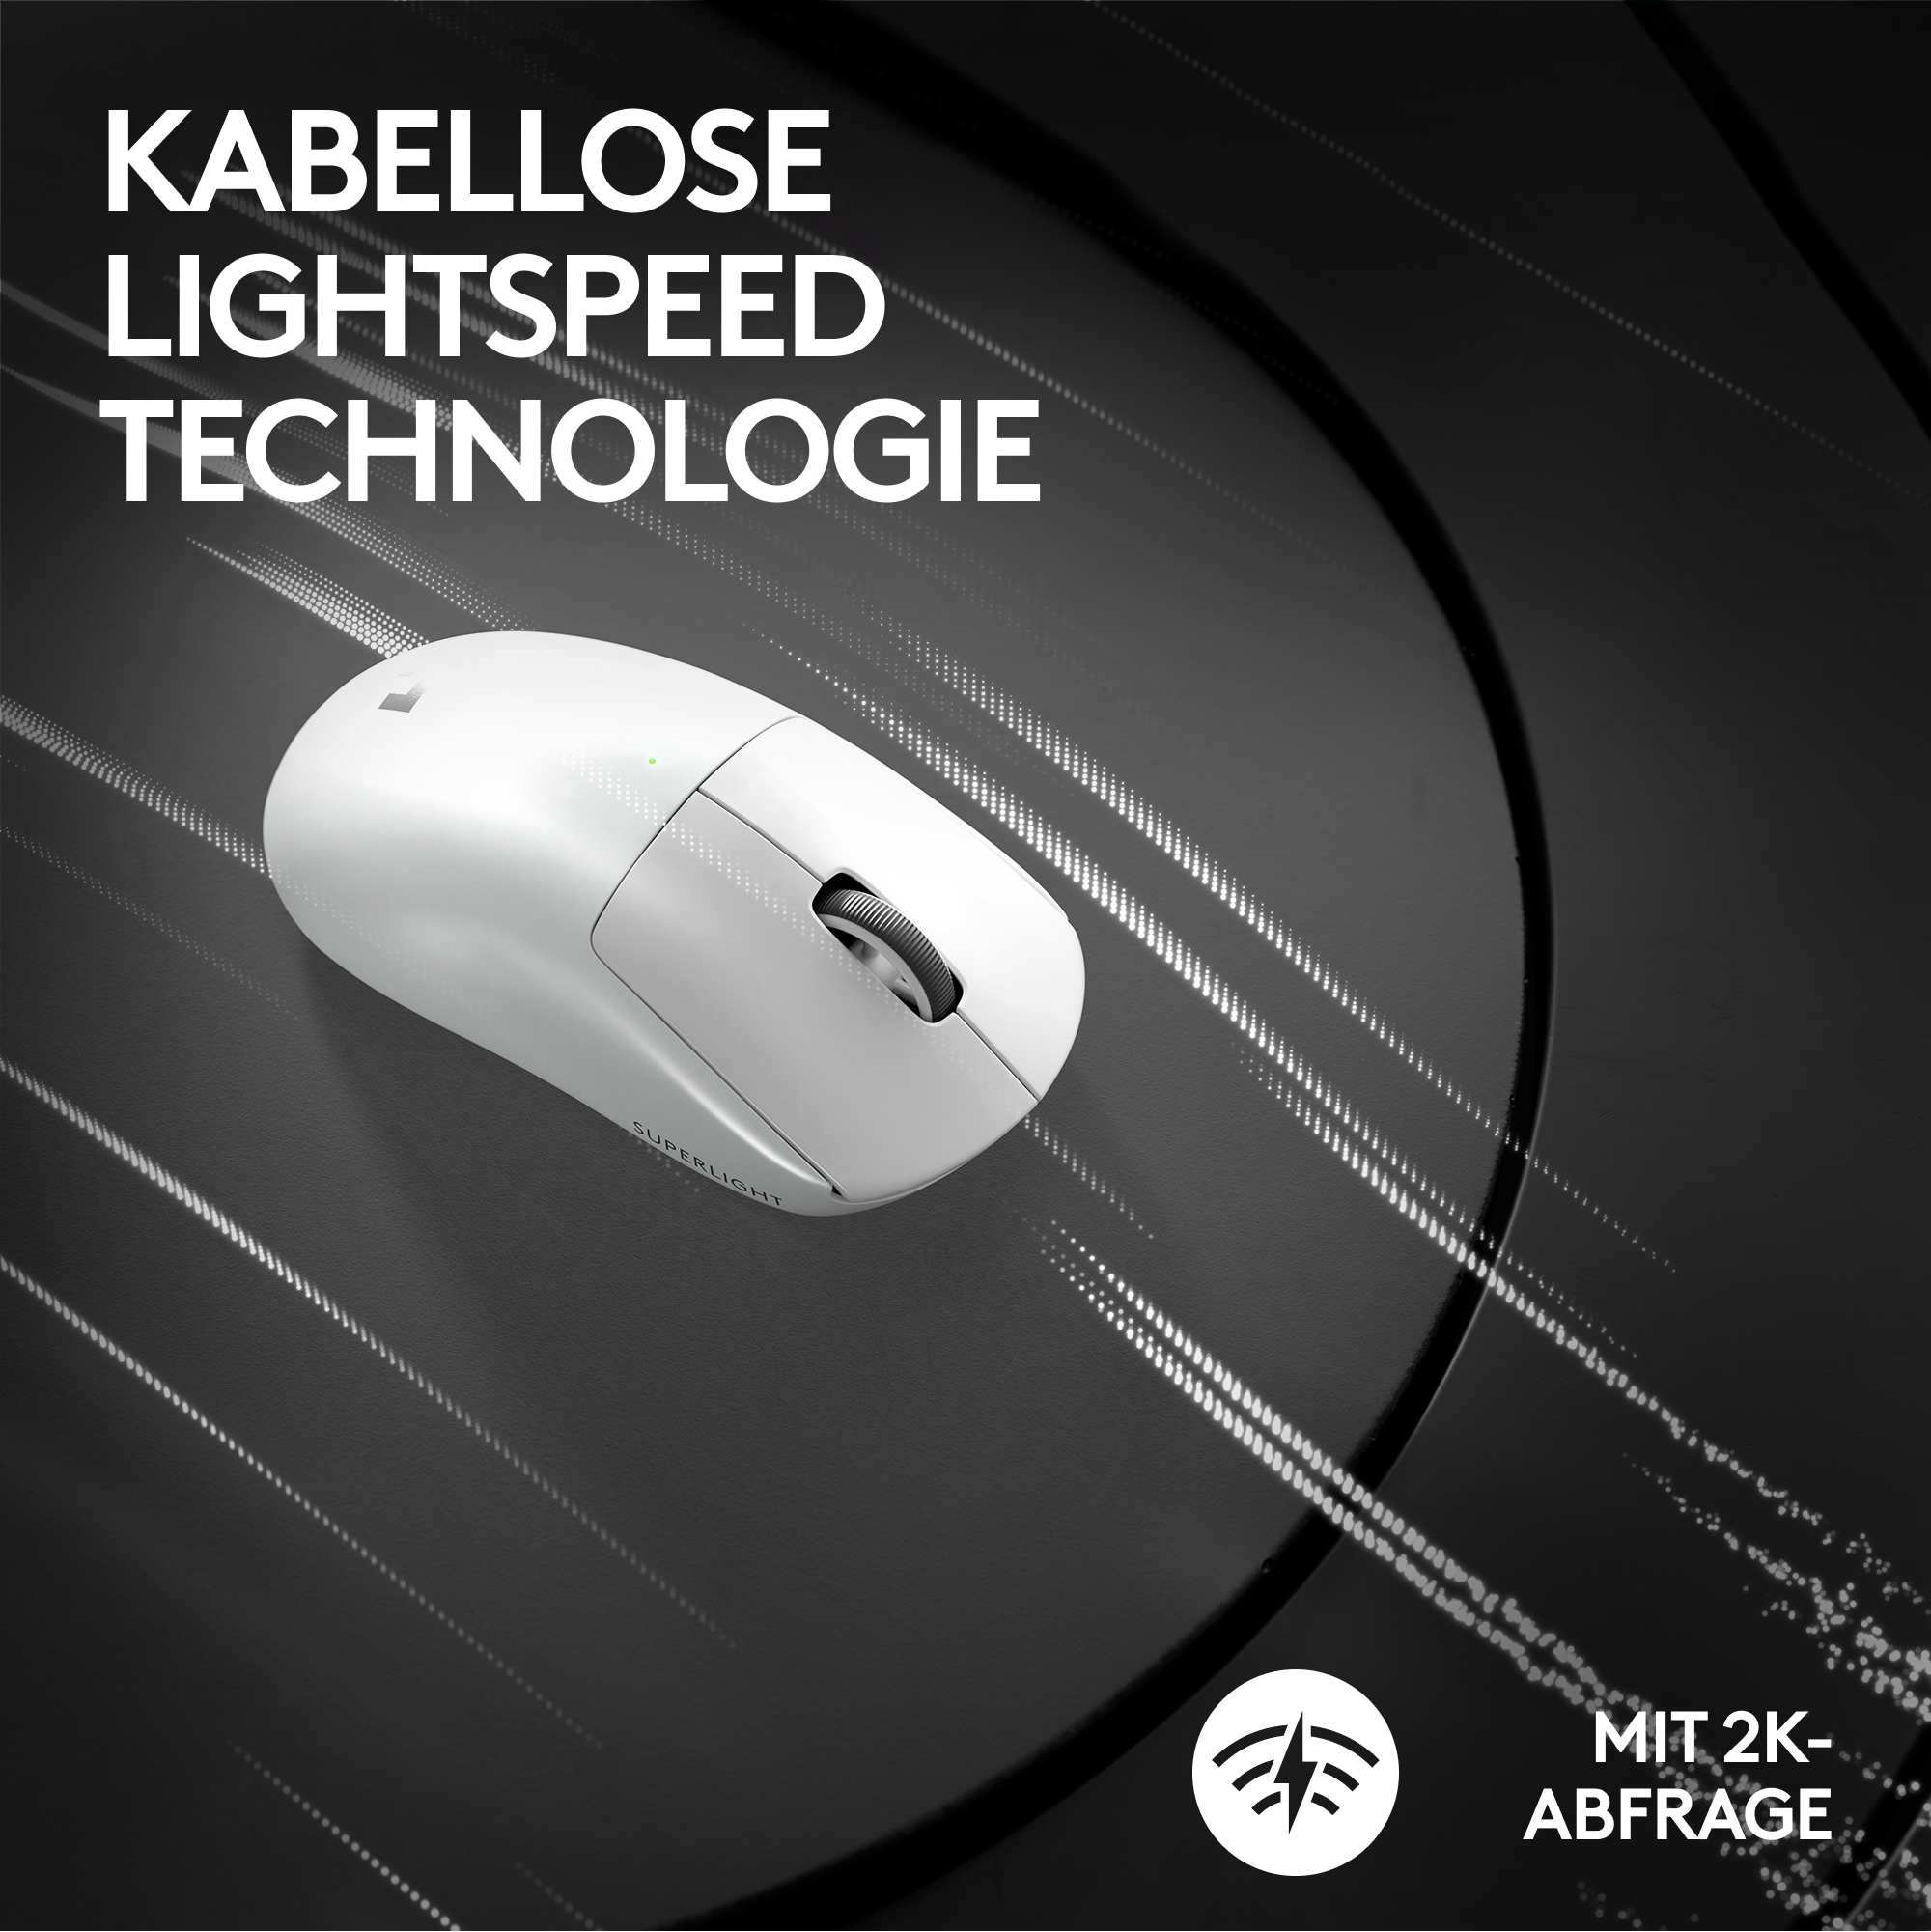 Tasten, 2 Superlight kabellose Lightspeed G LOGITECH mit X Pro Maus, 5 Weiß Gaming programmierbare